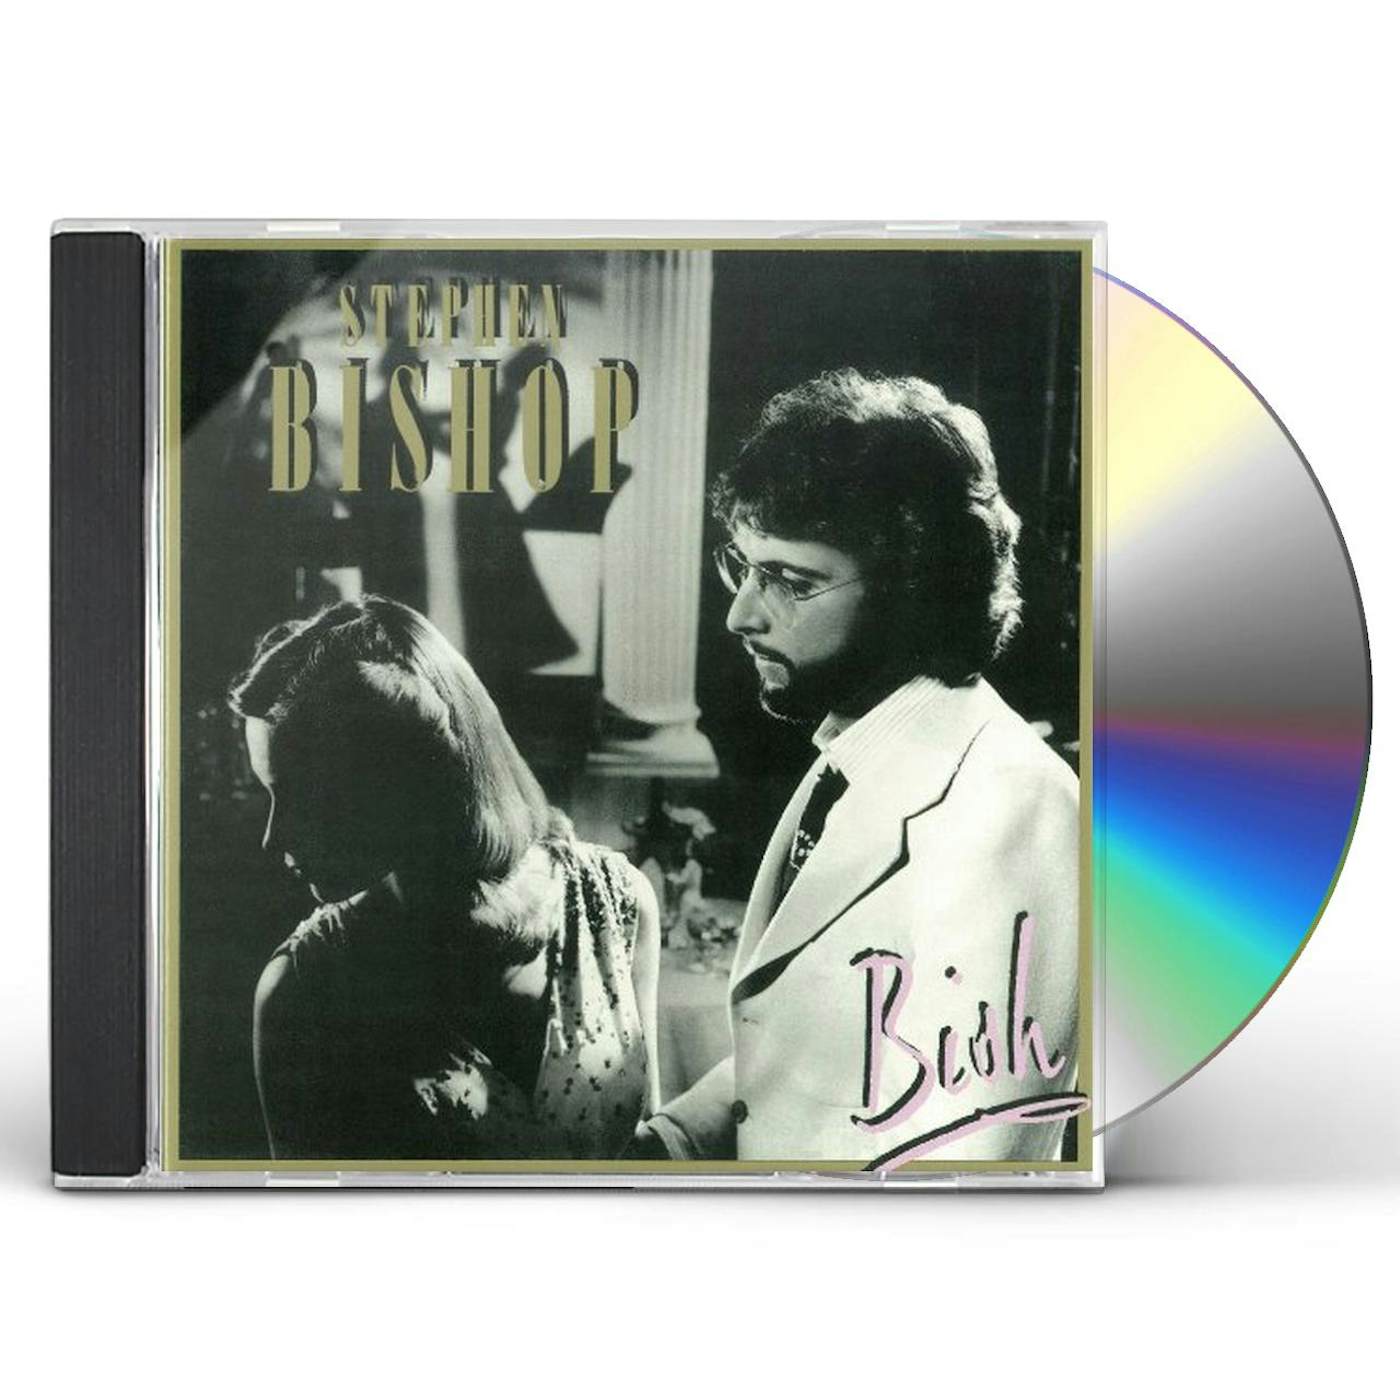 Stephen Bishop BISH CD